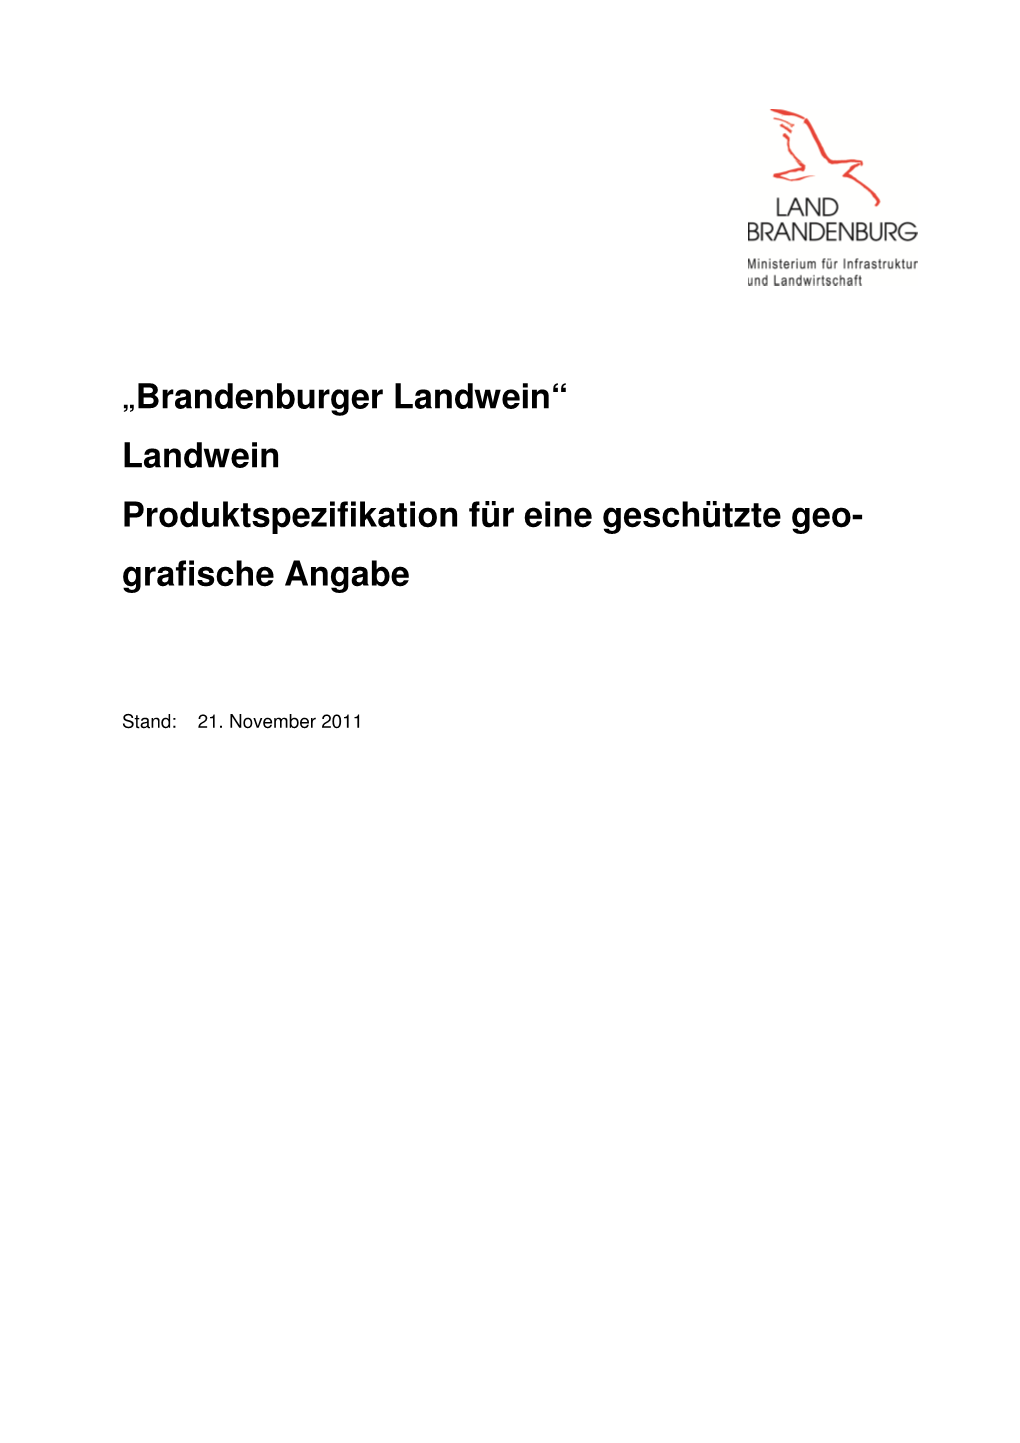 Geschützte Geografische Angabe "Brandenburger Landwein"